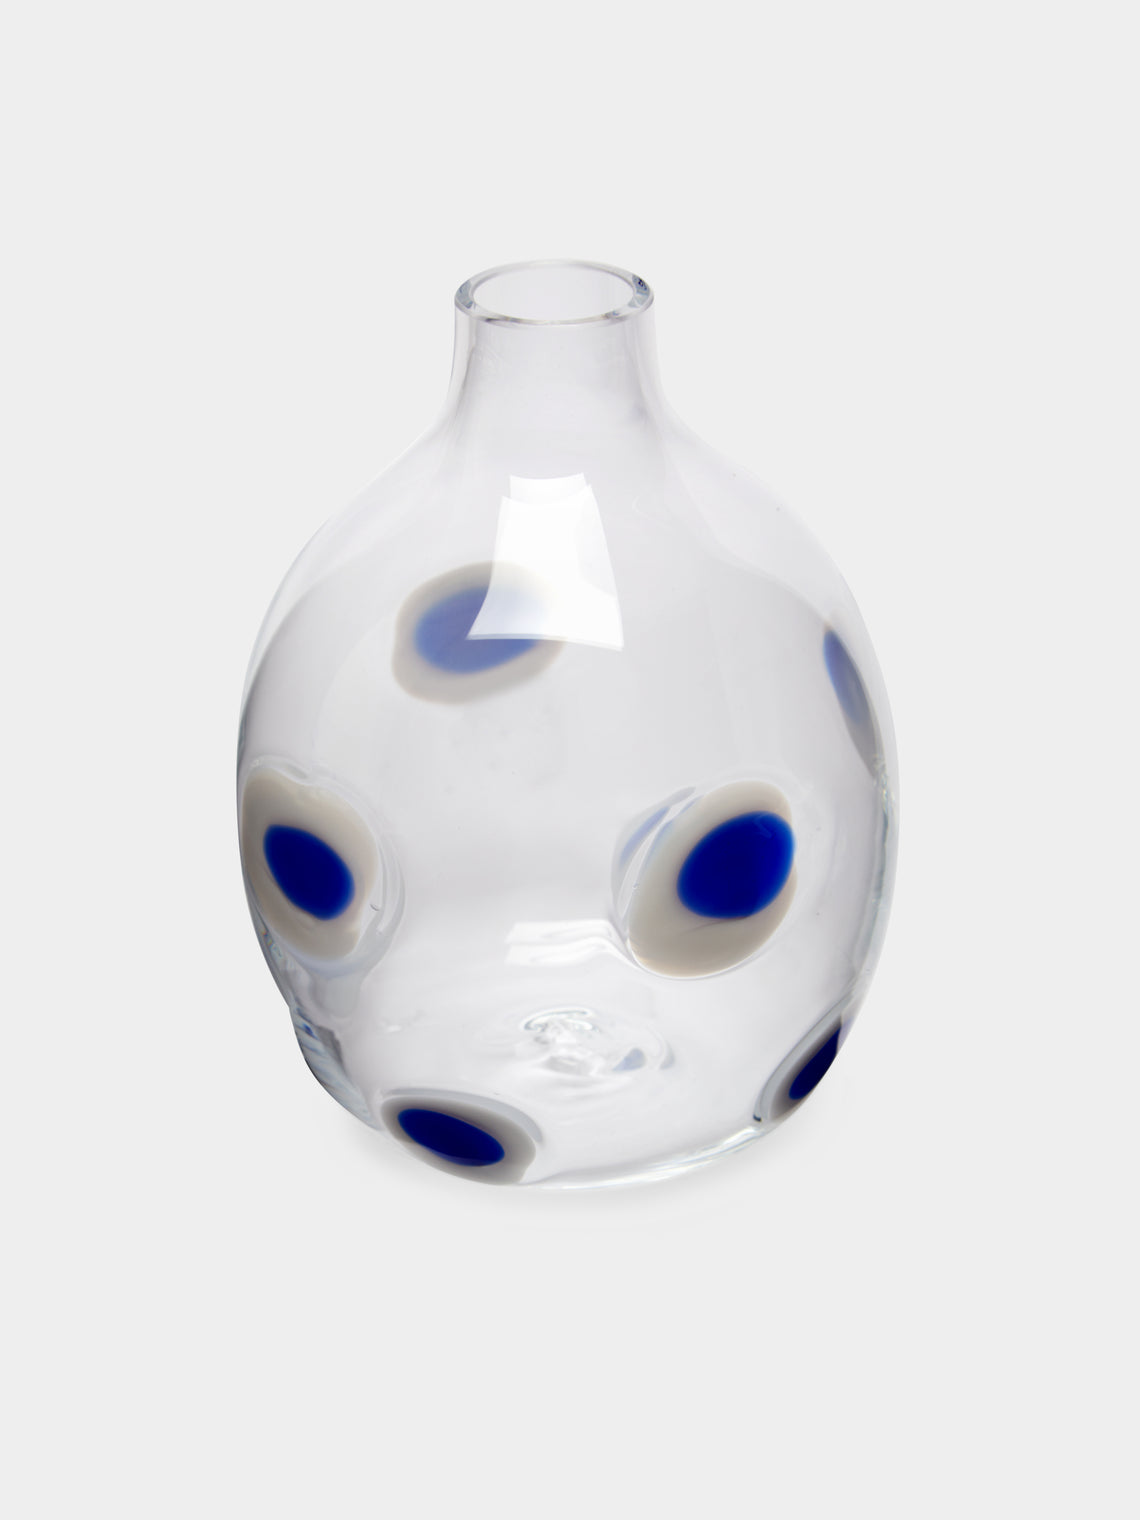 Hand-Blown Murano Glass Bud Vase